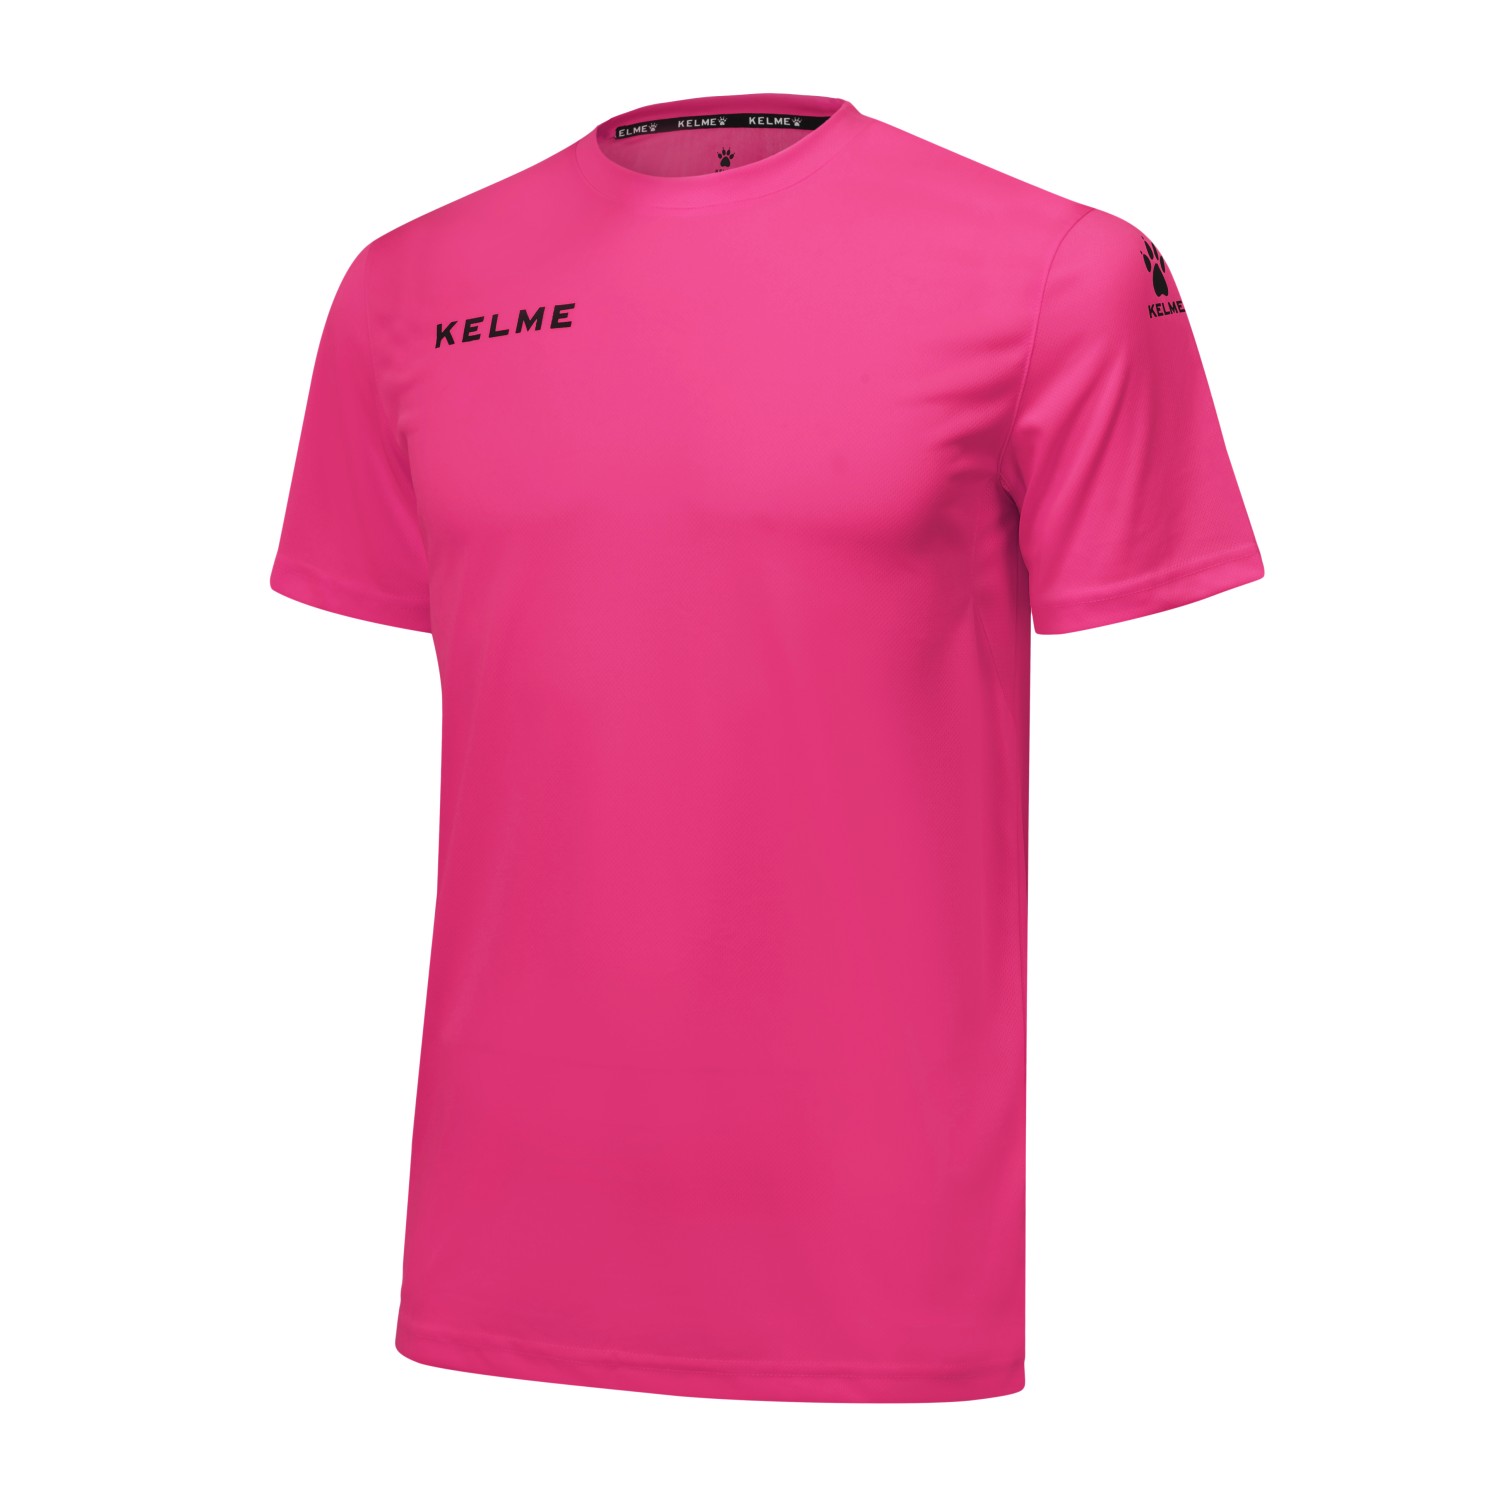 Camiseta Campus Kelme Rosa - rosa - 